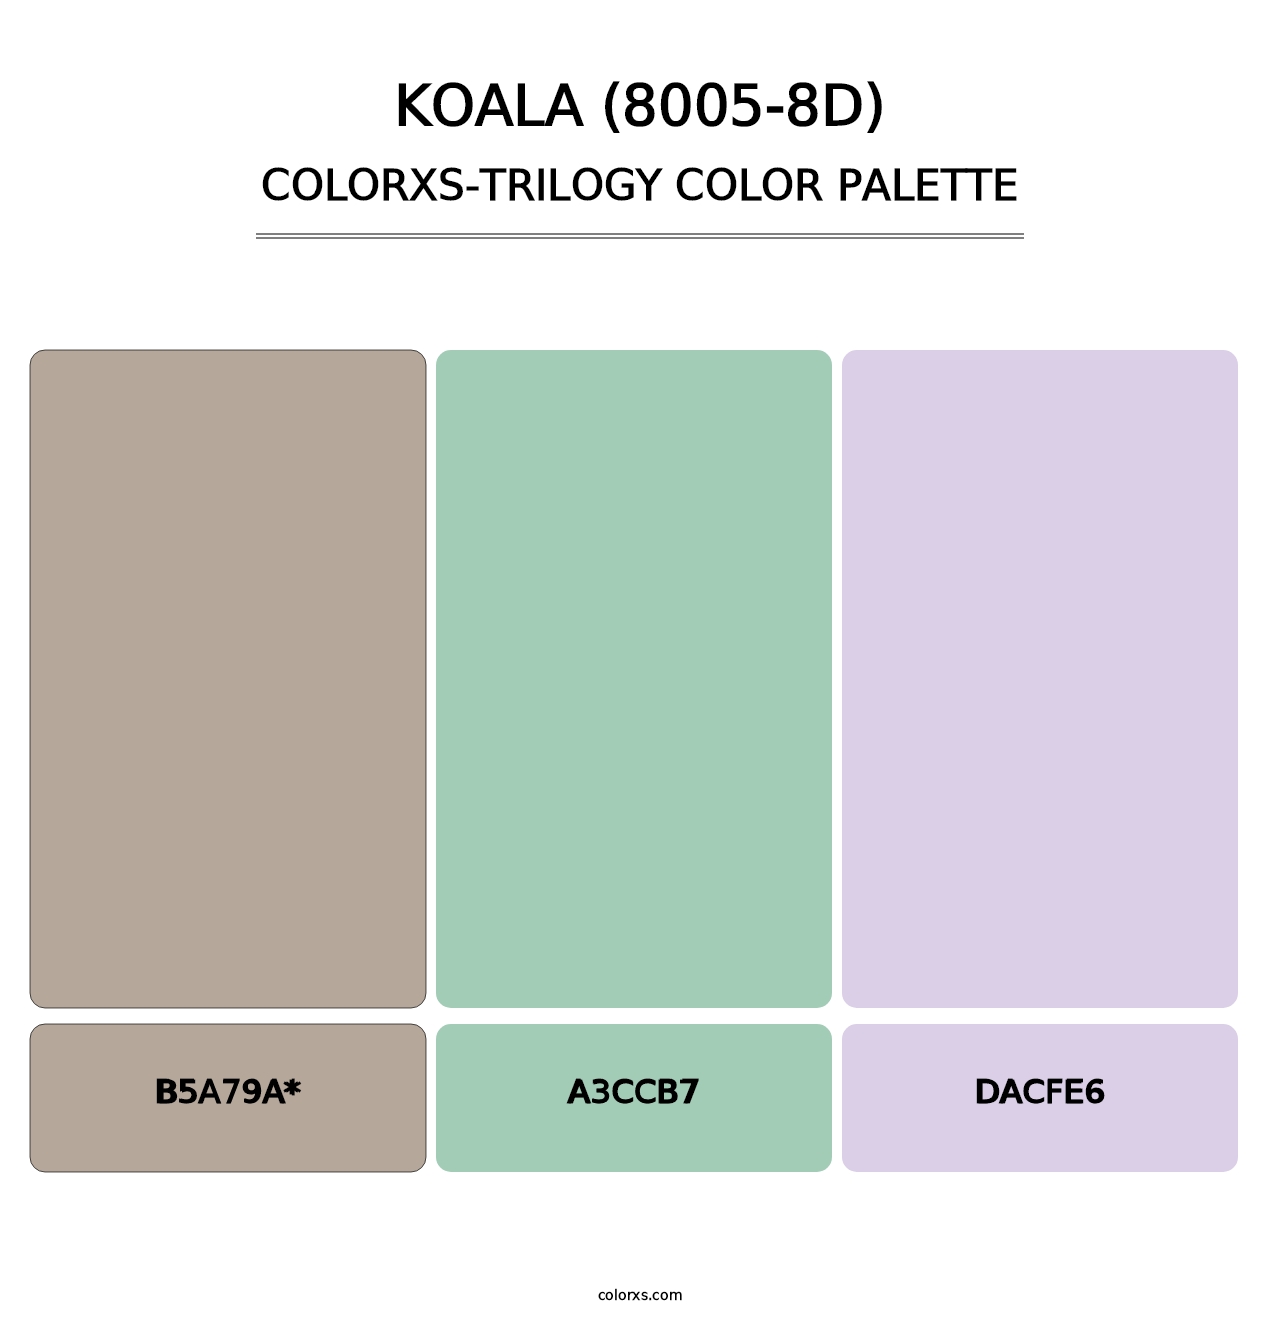 Koala (8005-8D) - Colorxs Trilogy Palette